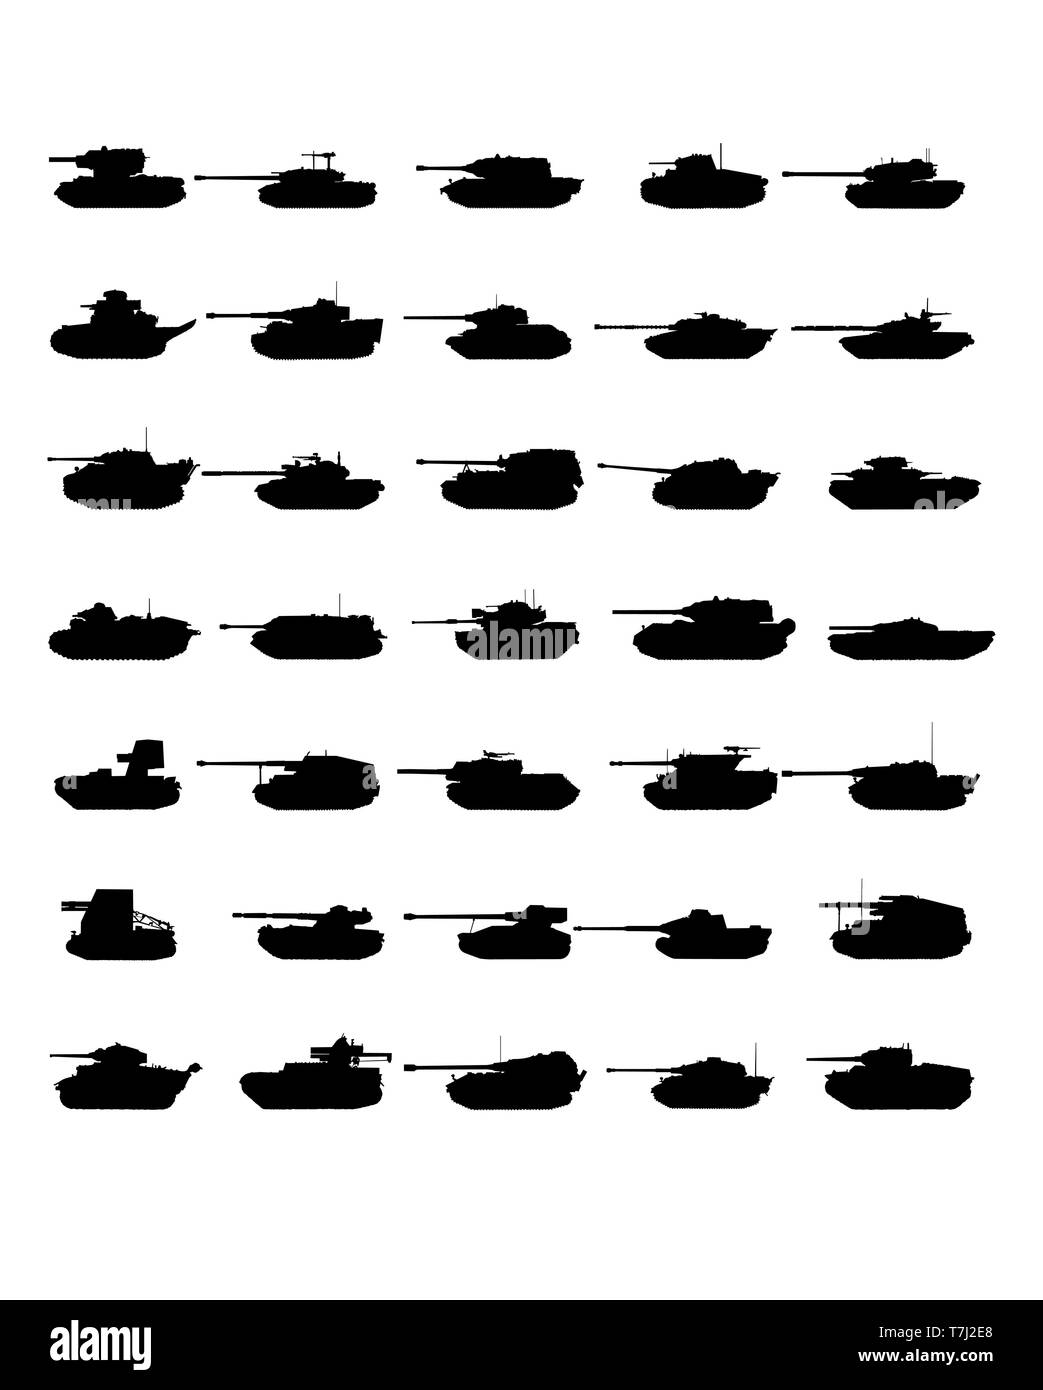 L'icône du réservoir guerre vecteur conception militaire armée isolés ensemble silhouette machine design feu défense de la force Illustration de Vecteur